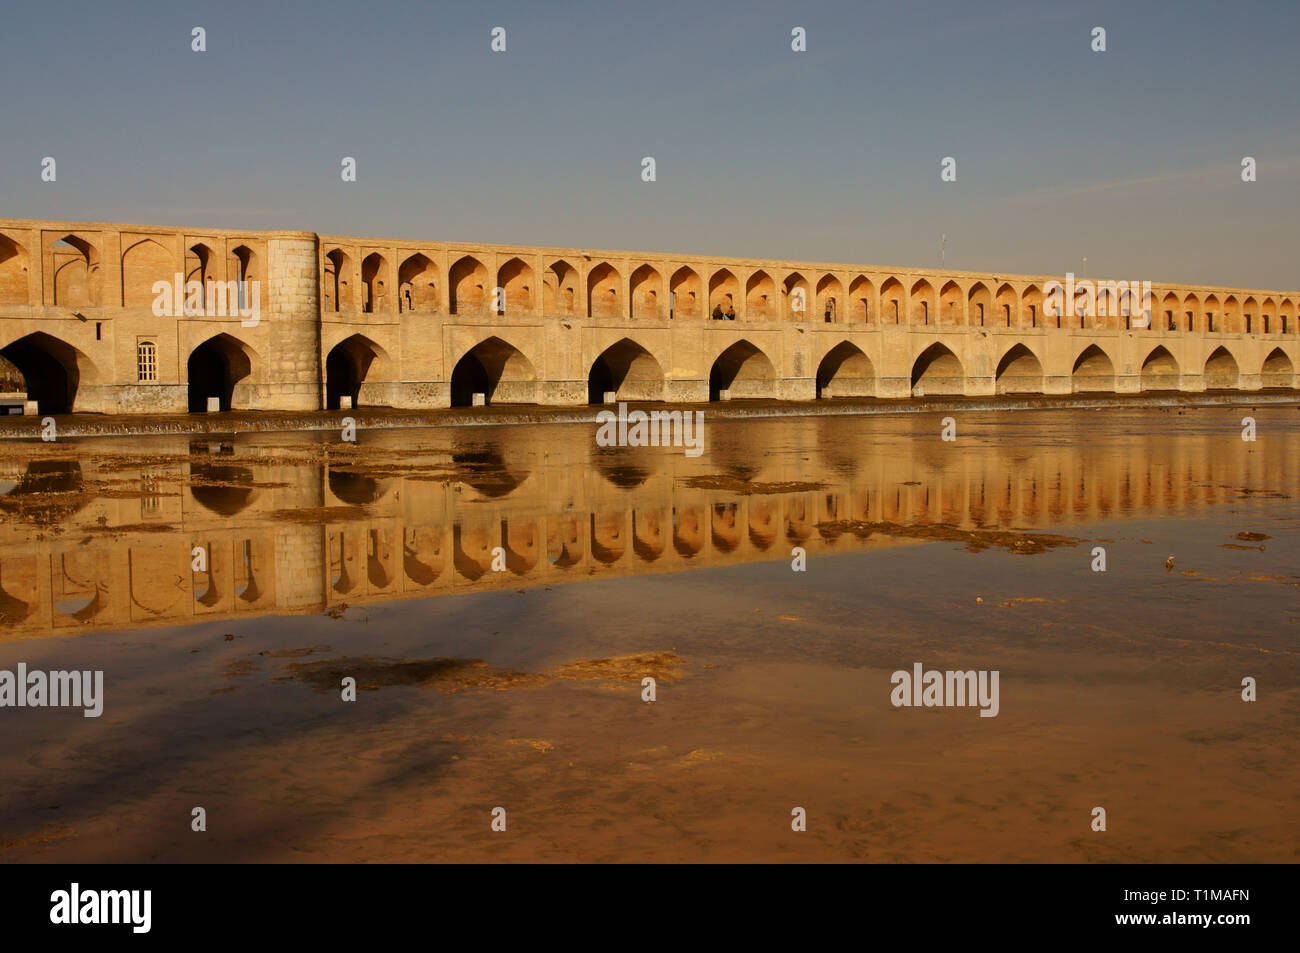 Arche du pont Allahverdi Khan, Pol si-o-seh, pont de trente-trois travées.Ispahan.Iran. Banque D'Images